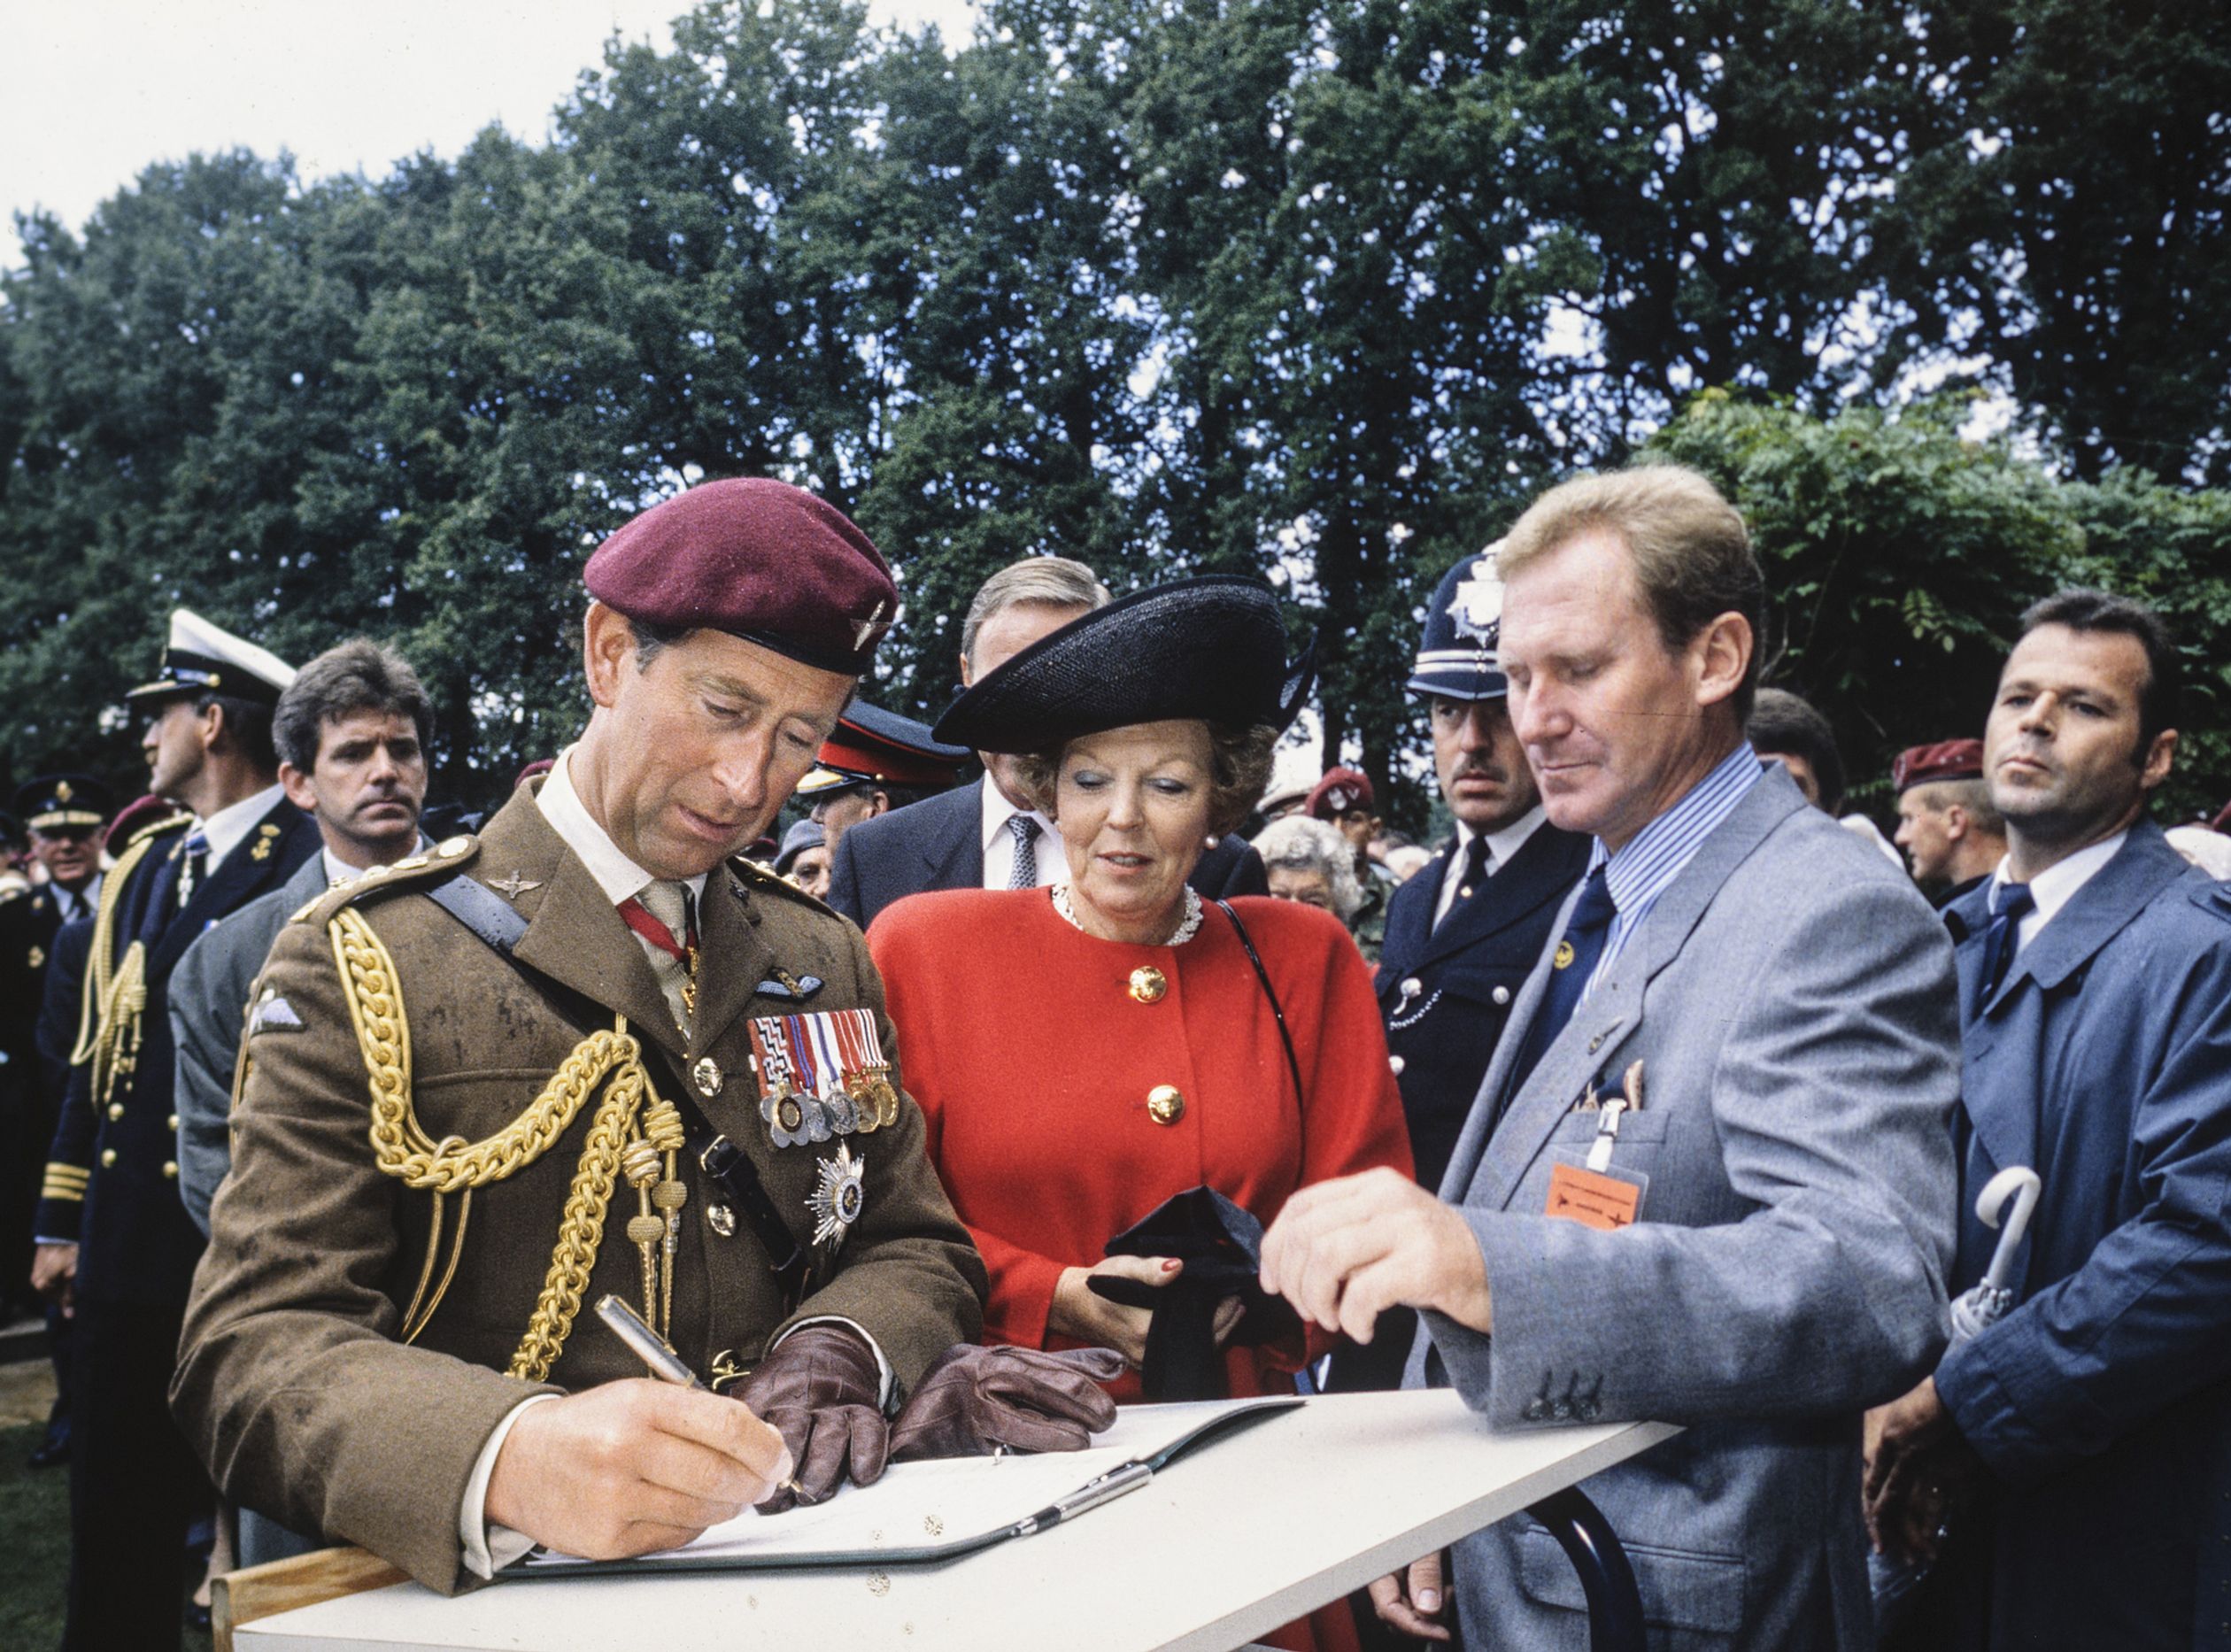 In 1994 waren prinses Beatrix en prins Charles ook samen bij de 50e herdenking van de Slag om